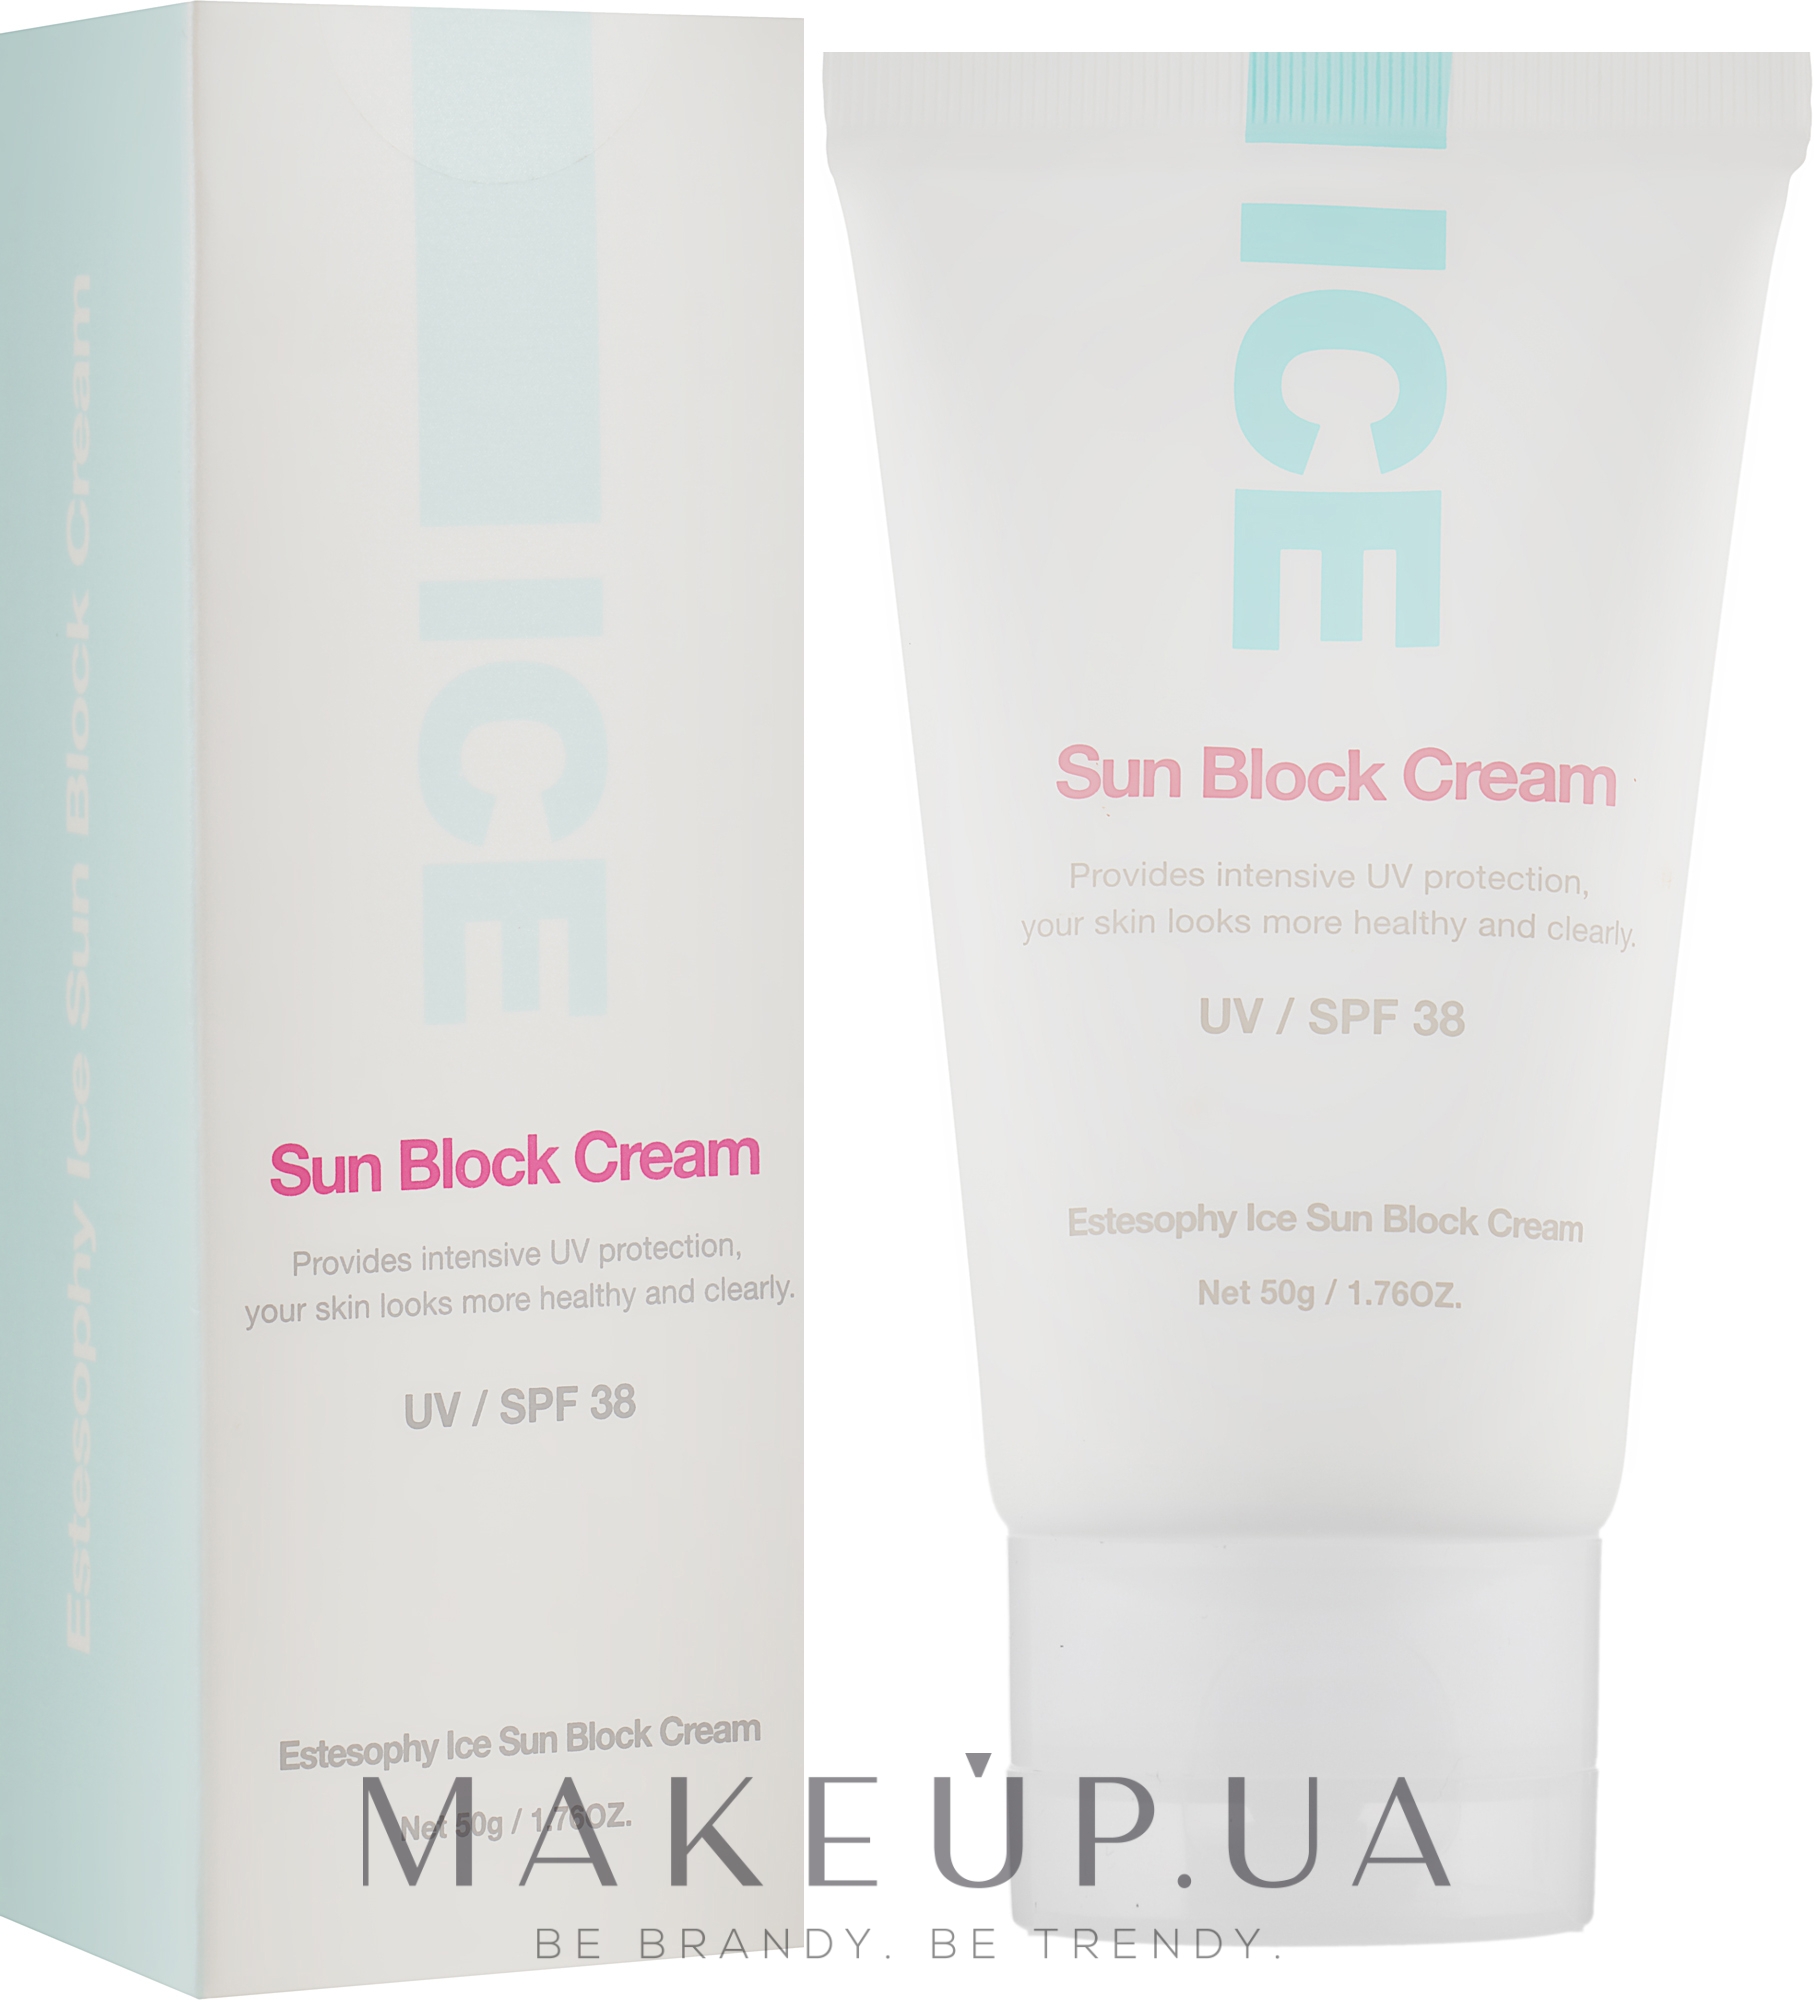 Солнцезащитный крем для лица - Estesophy Ice Sun Block Cream UV/SPF 38 — фото 50g